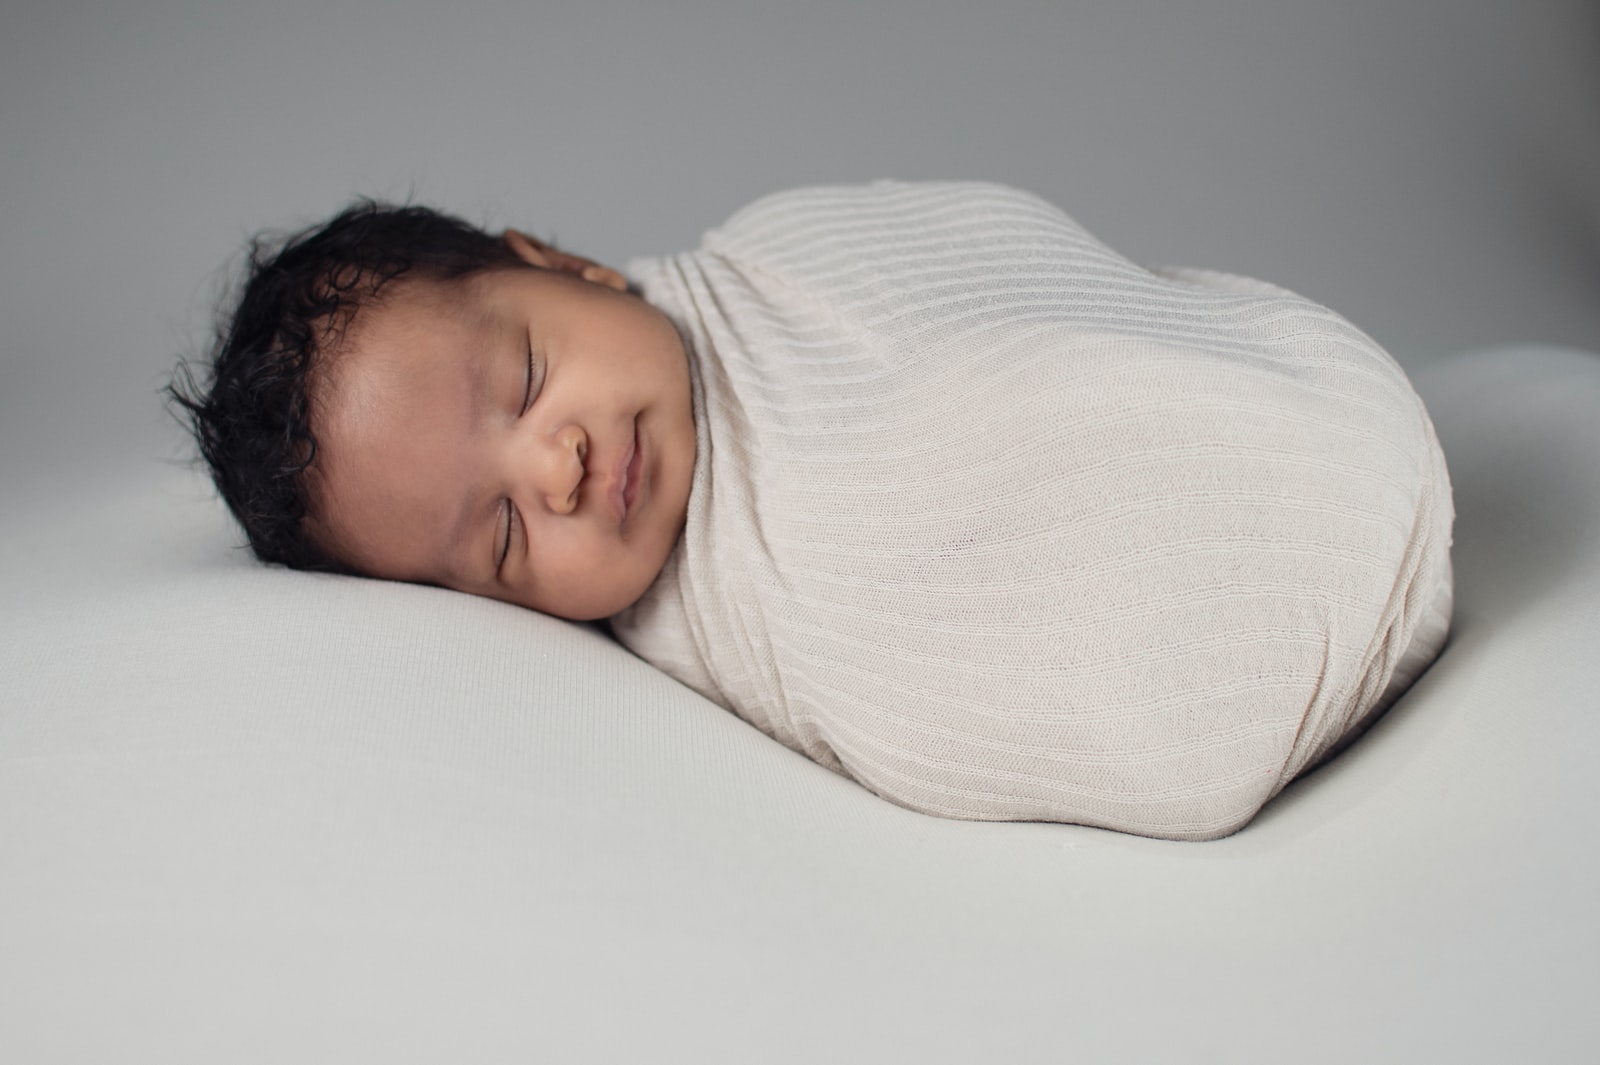 Périnatalité : comment surveiller la santé de bébé ?